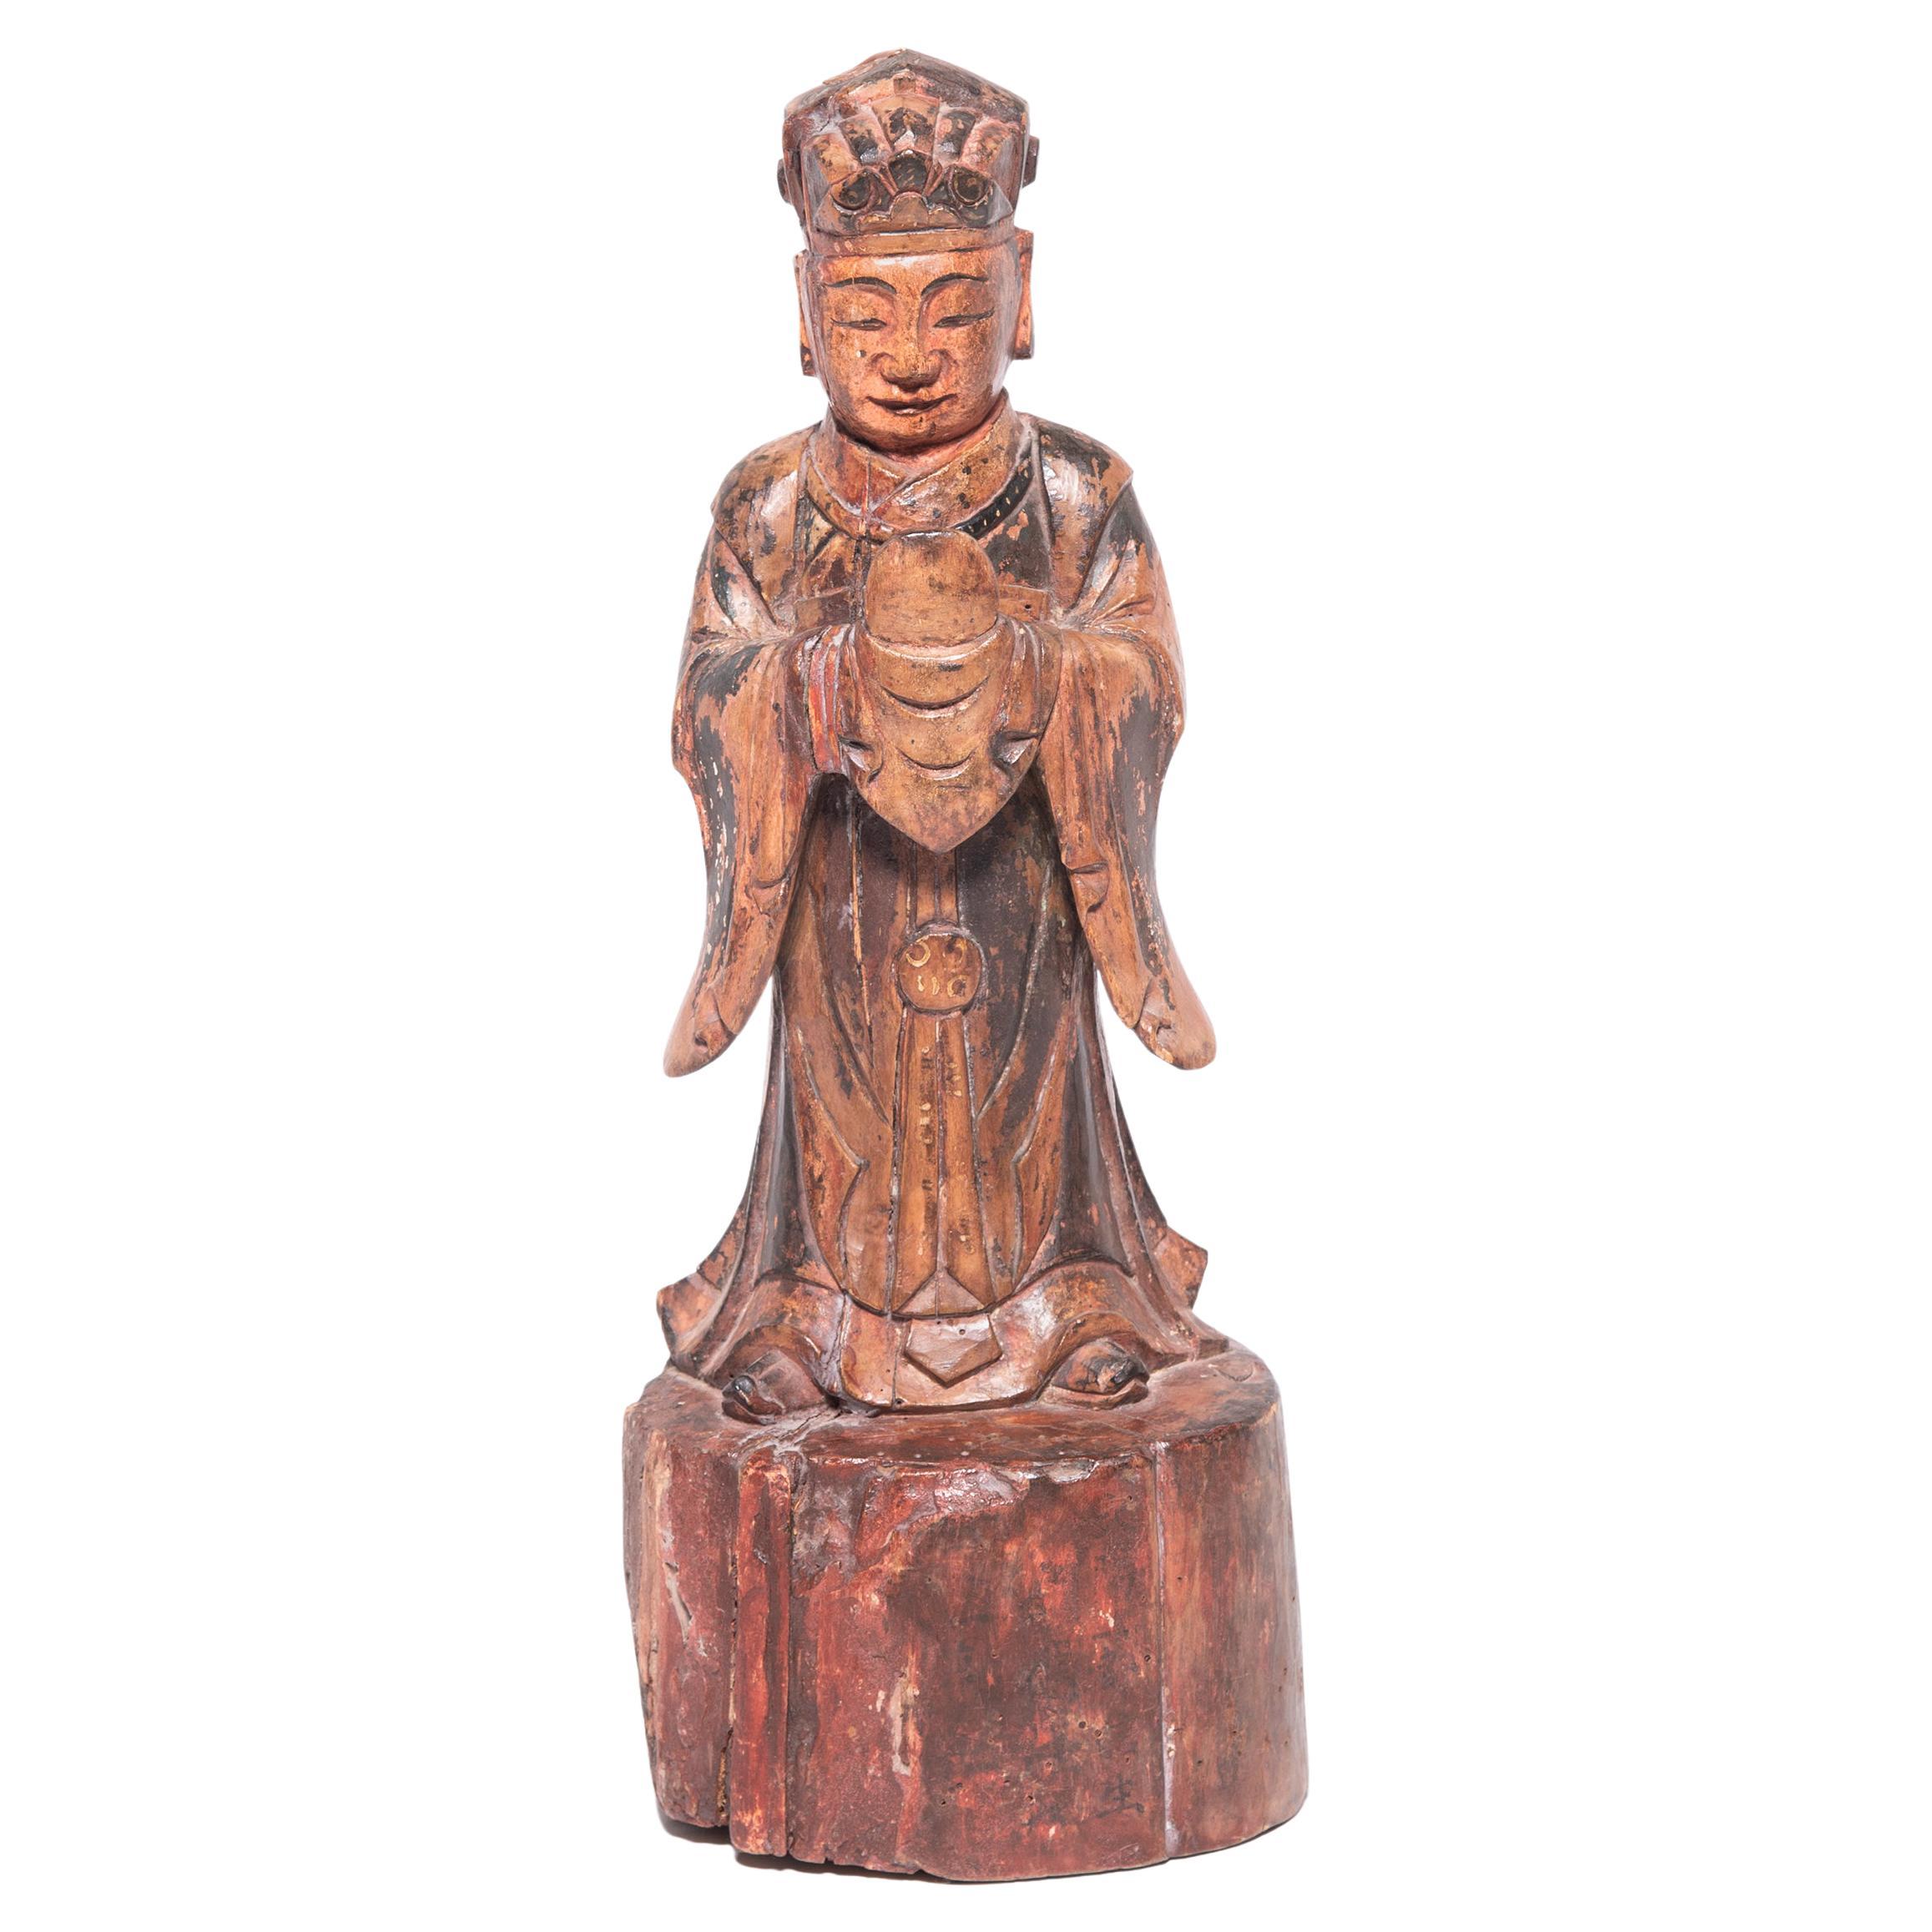 Spirit d'autel chinois en bois polychrome, datant d'environ 1850